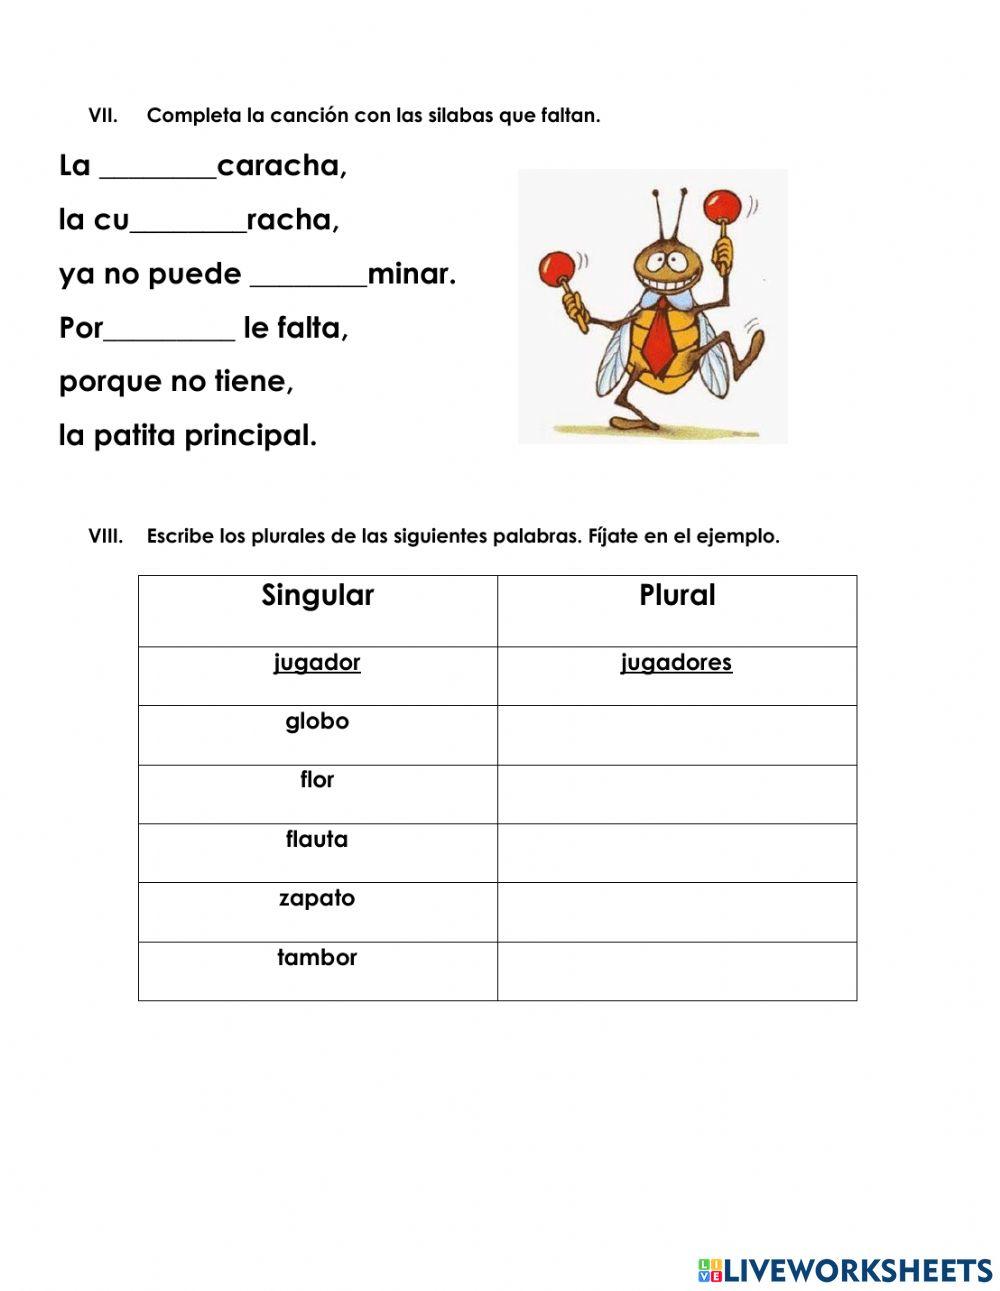 Examen de español 1°